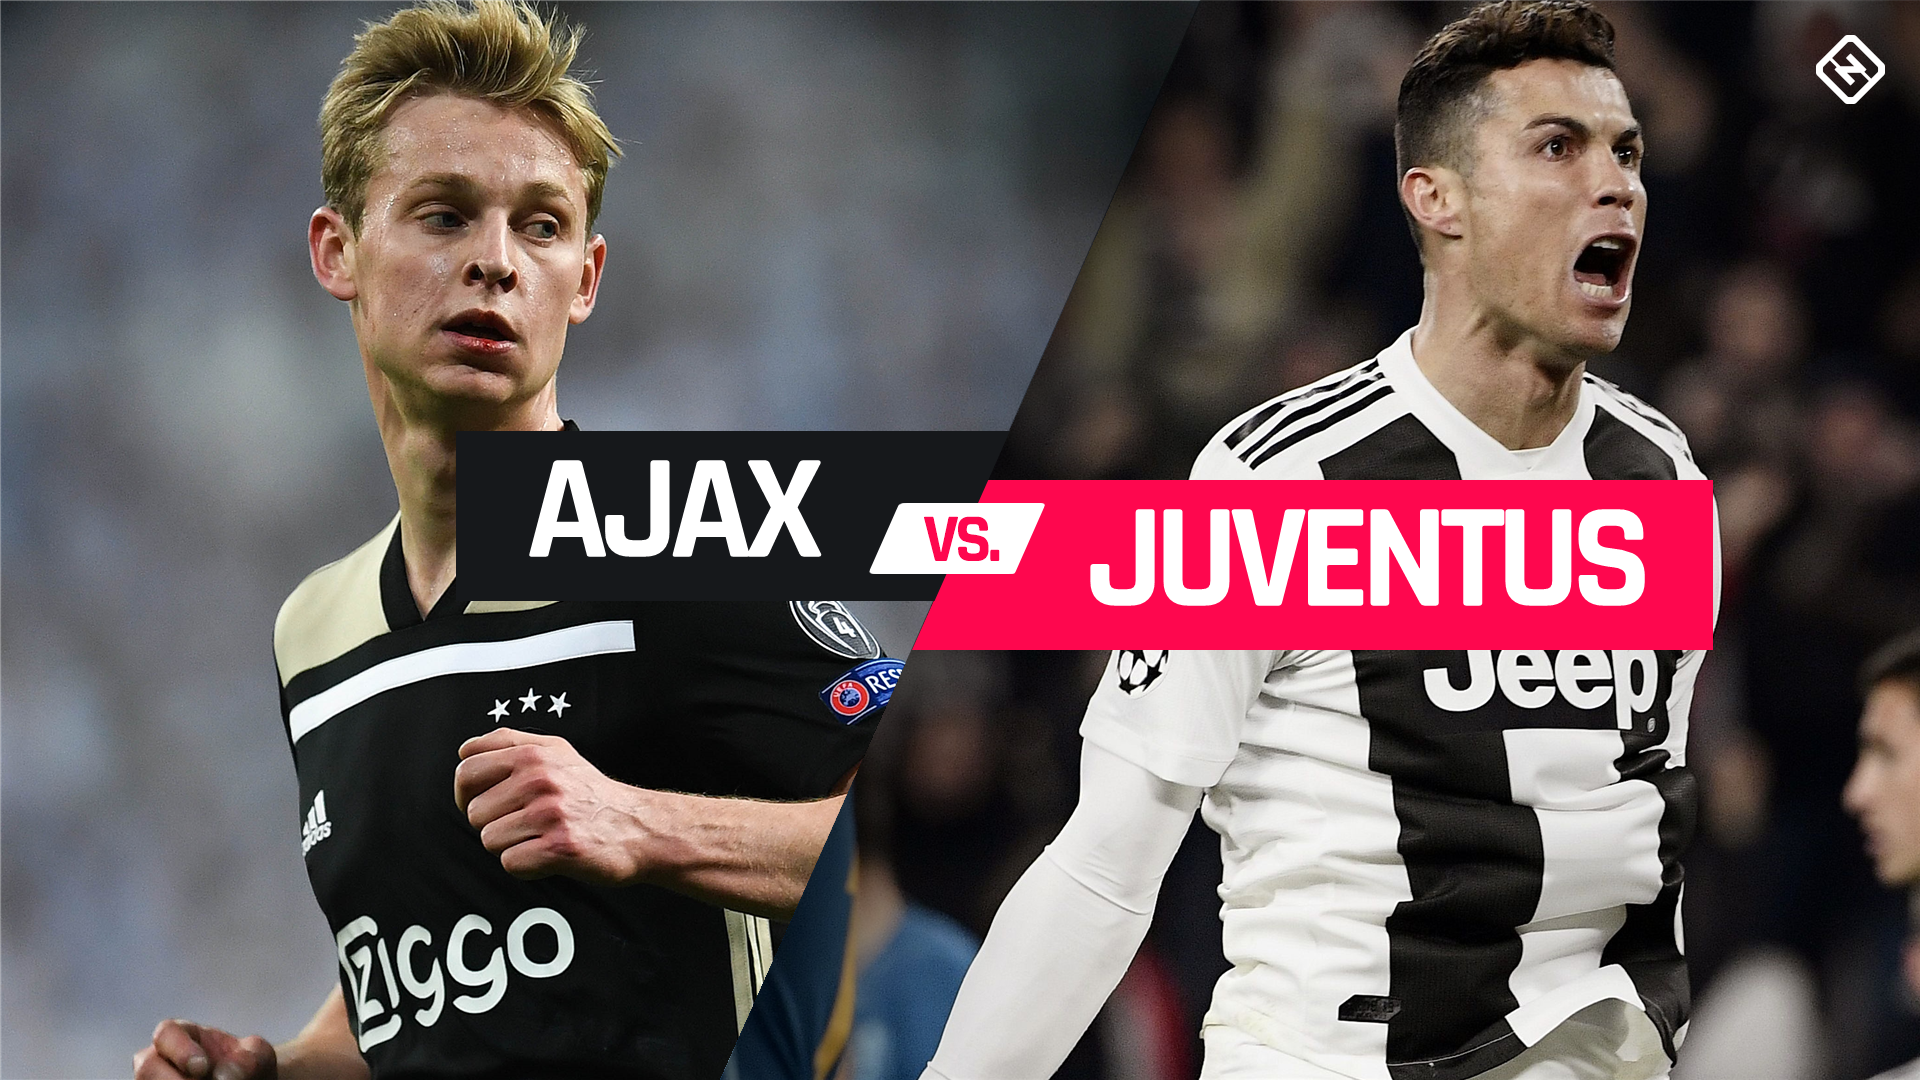 Ajax vs Juventus, soi kèo Ajax vs Juventus, nhận định Ajax vs Juventus, dự đoán Ajax vs Juventus, nhận định bóng đá đêm nay, soi kèo bóng đá hôm nay, kèo nhà cái